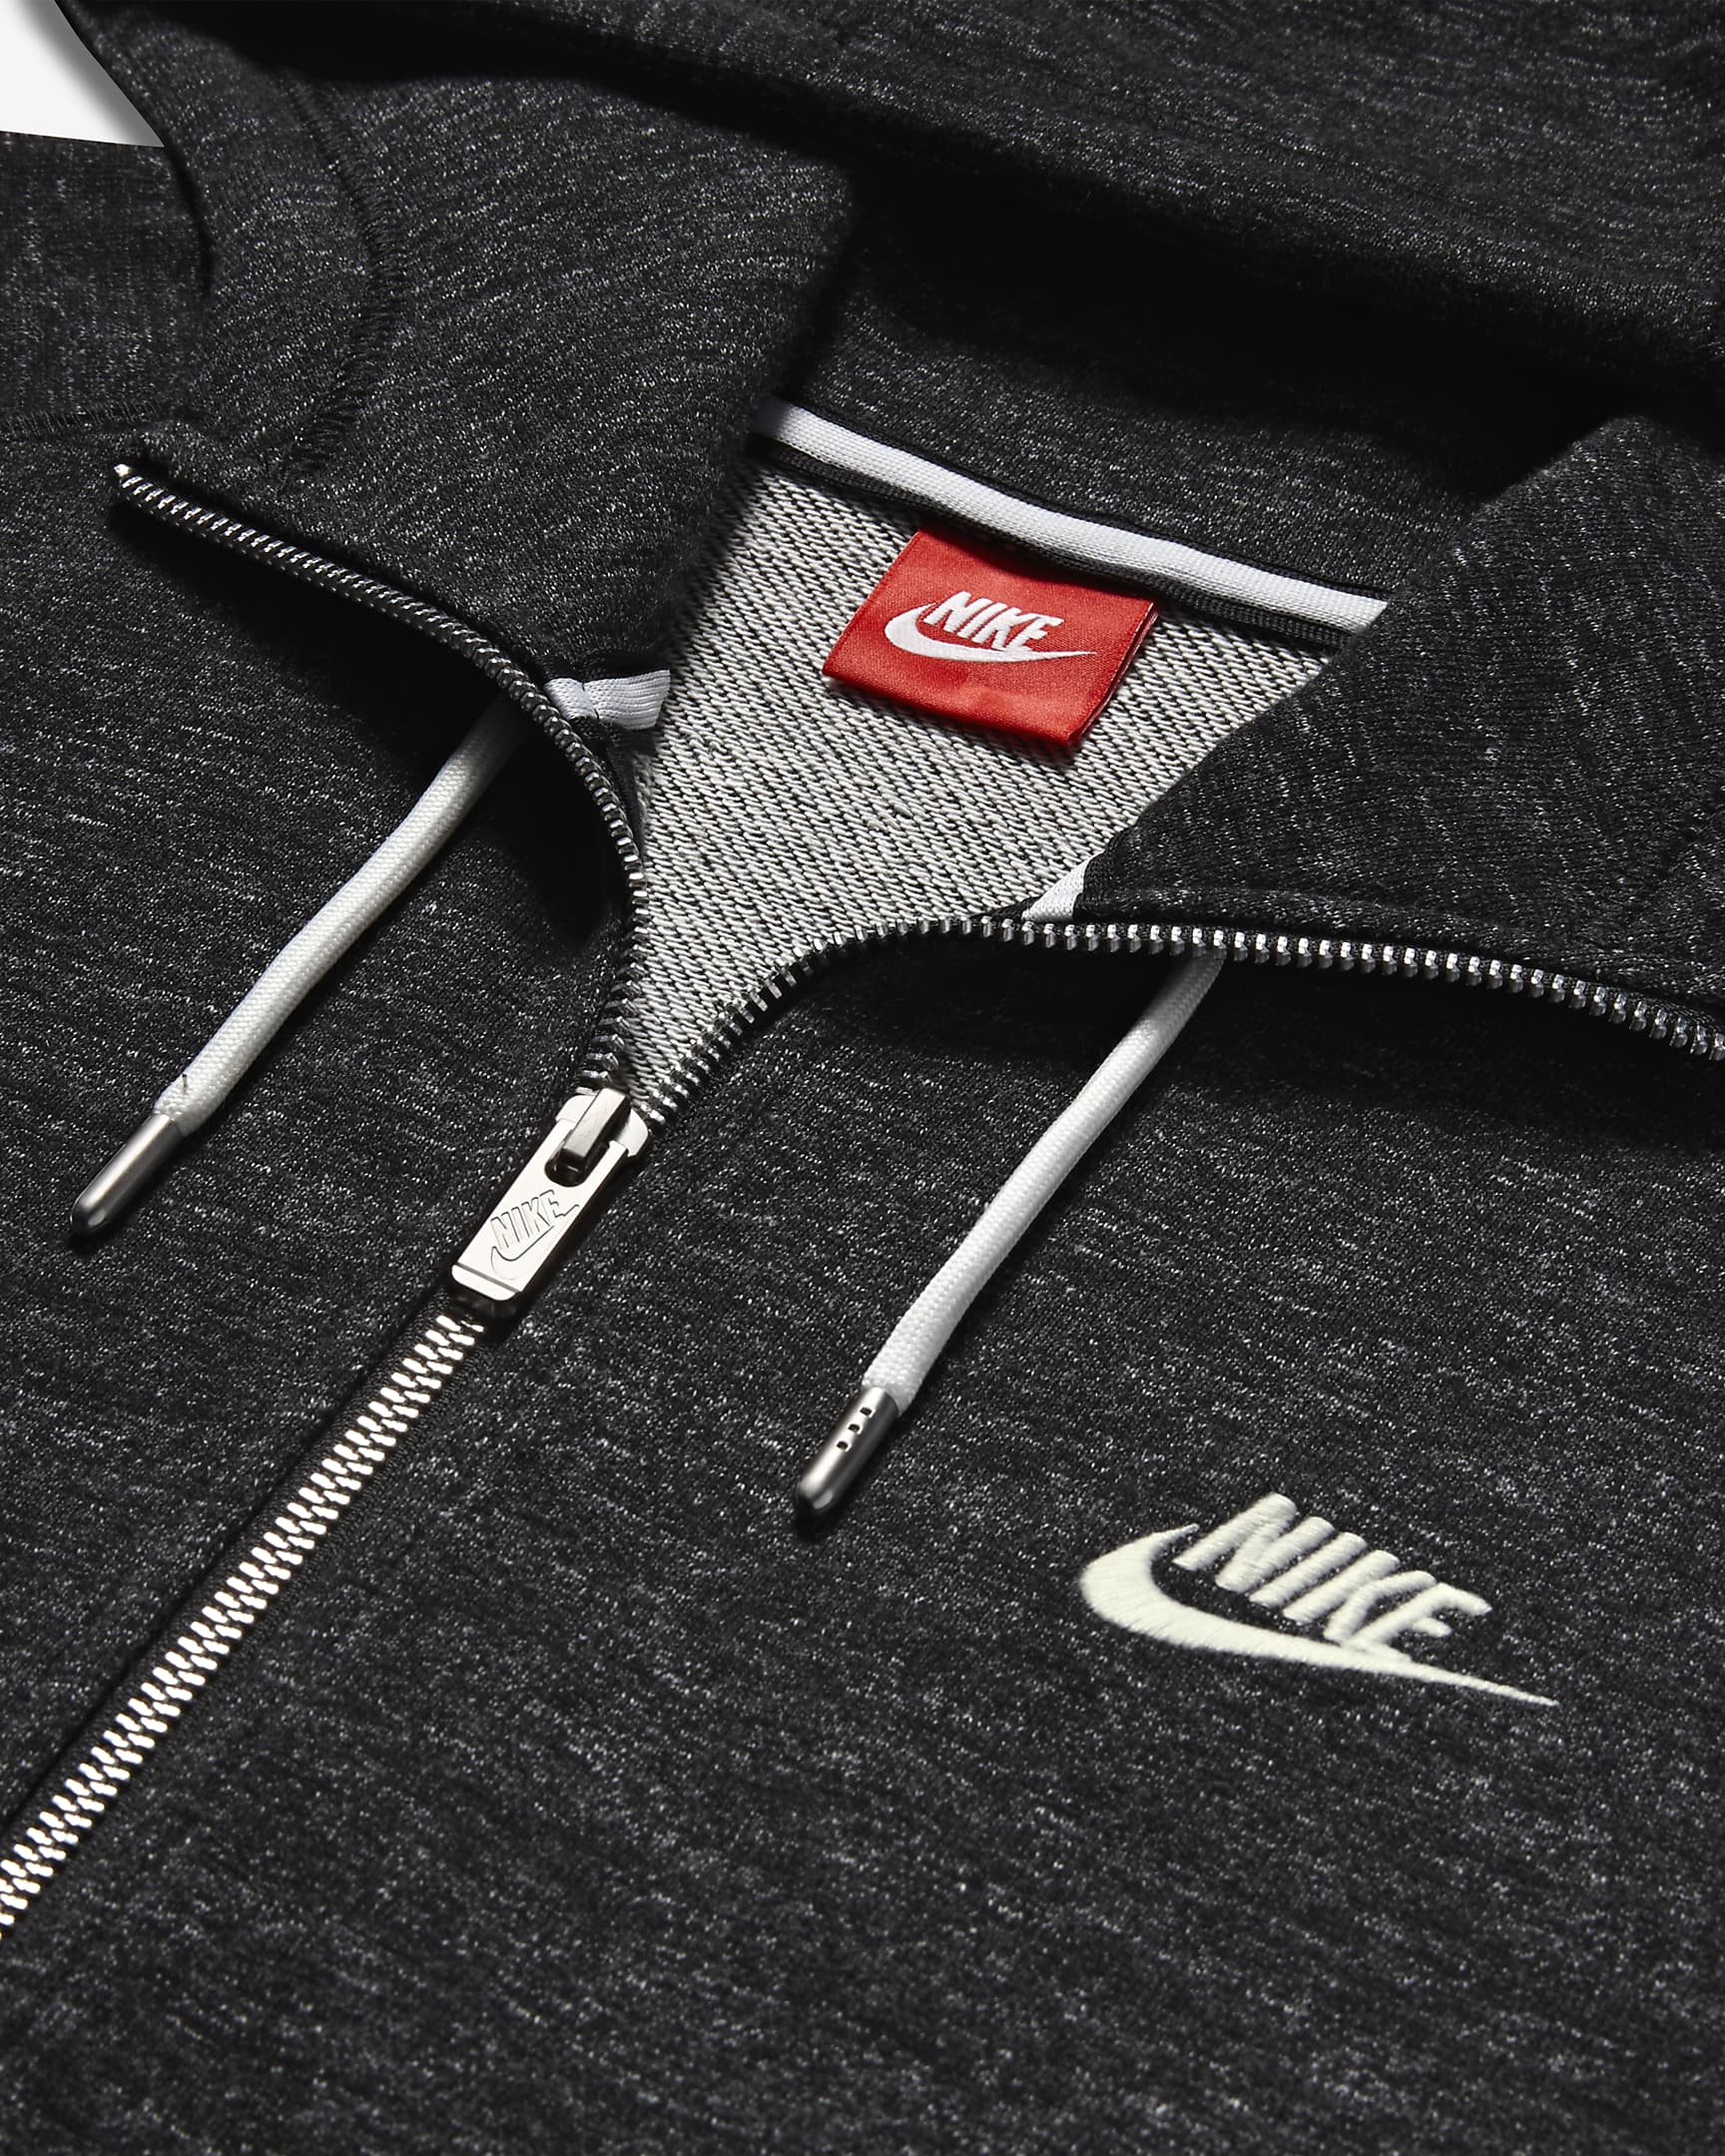 Nike Sportswear Legacy Men's Full-Zip Hoodie. Nike RO